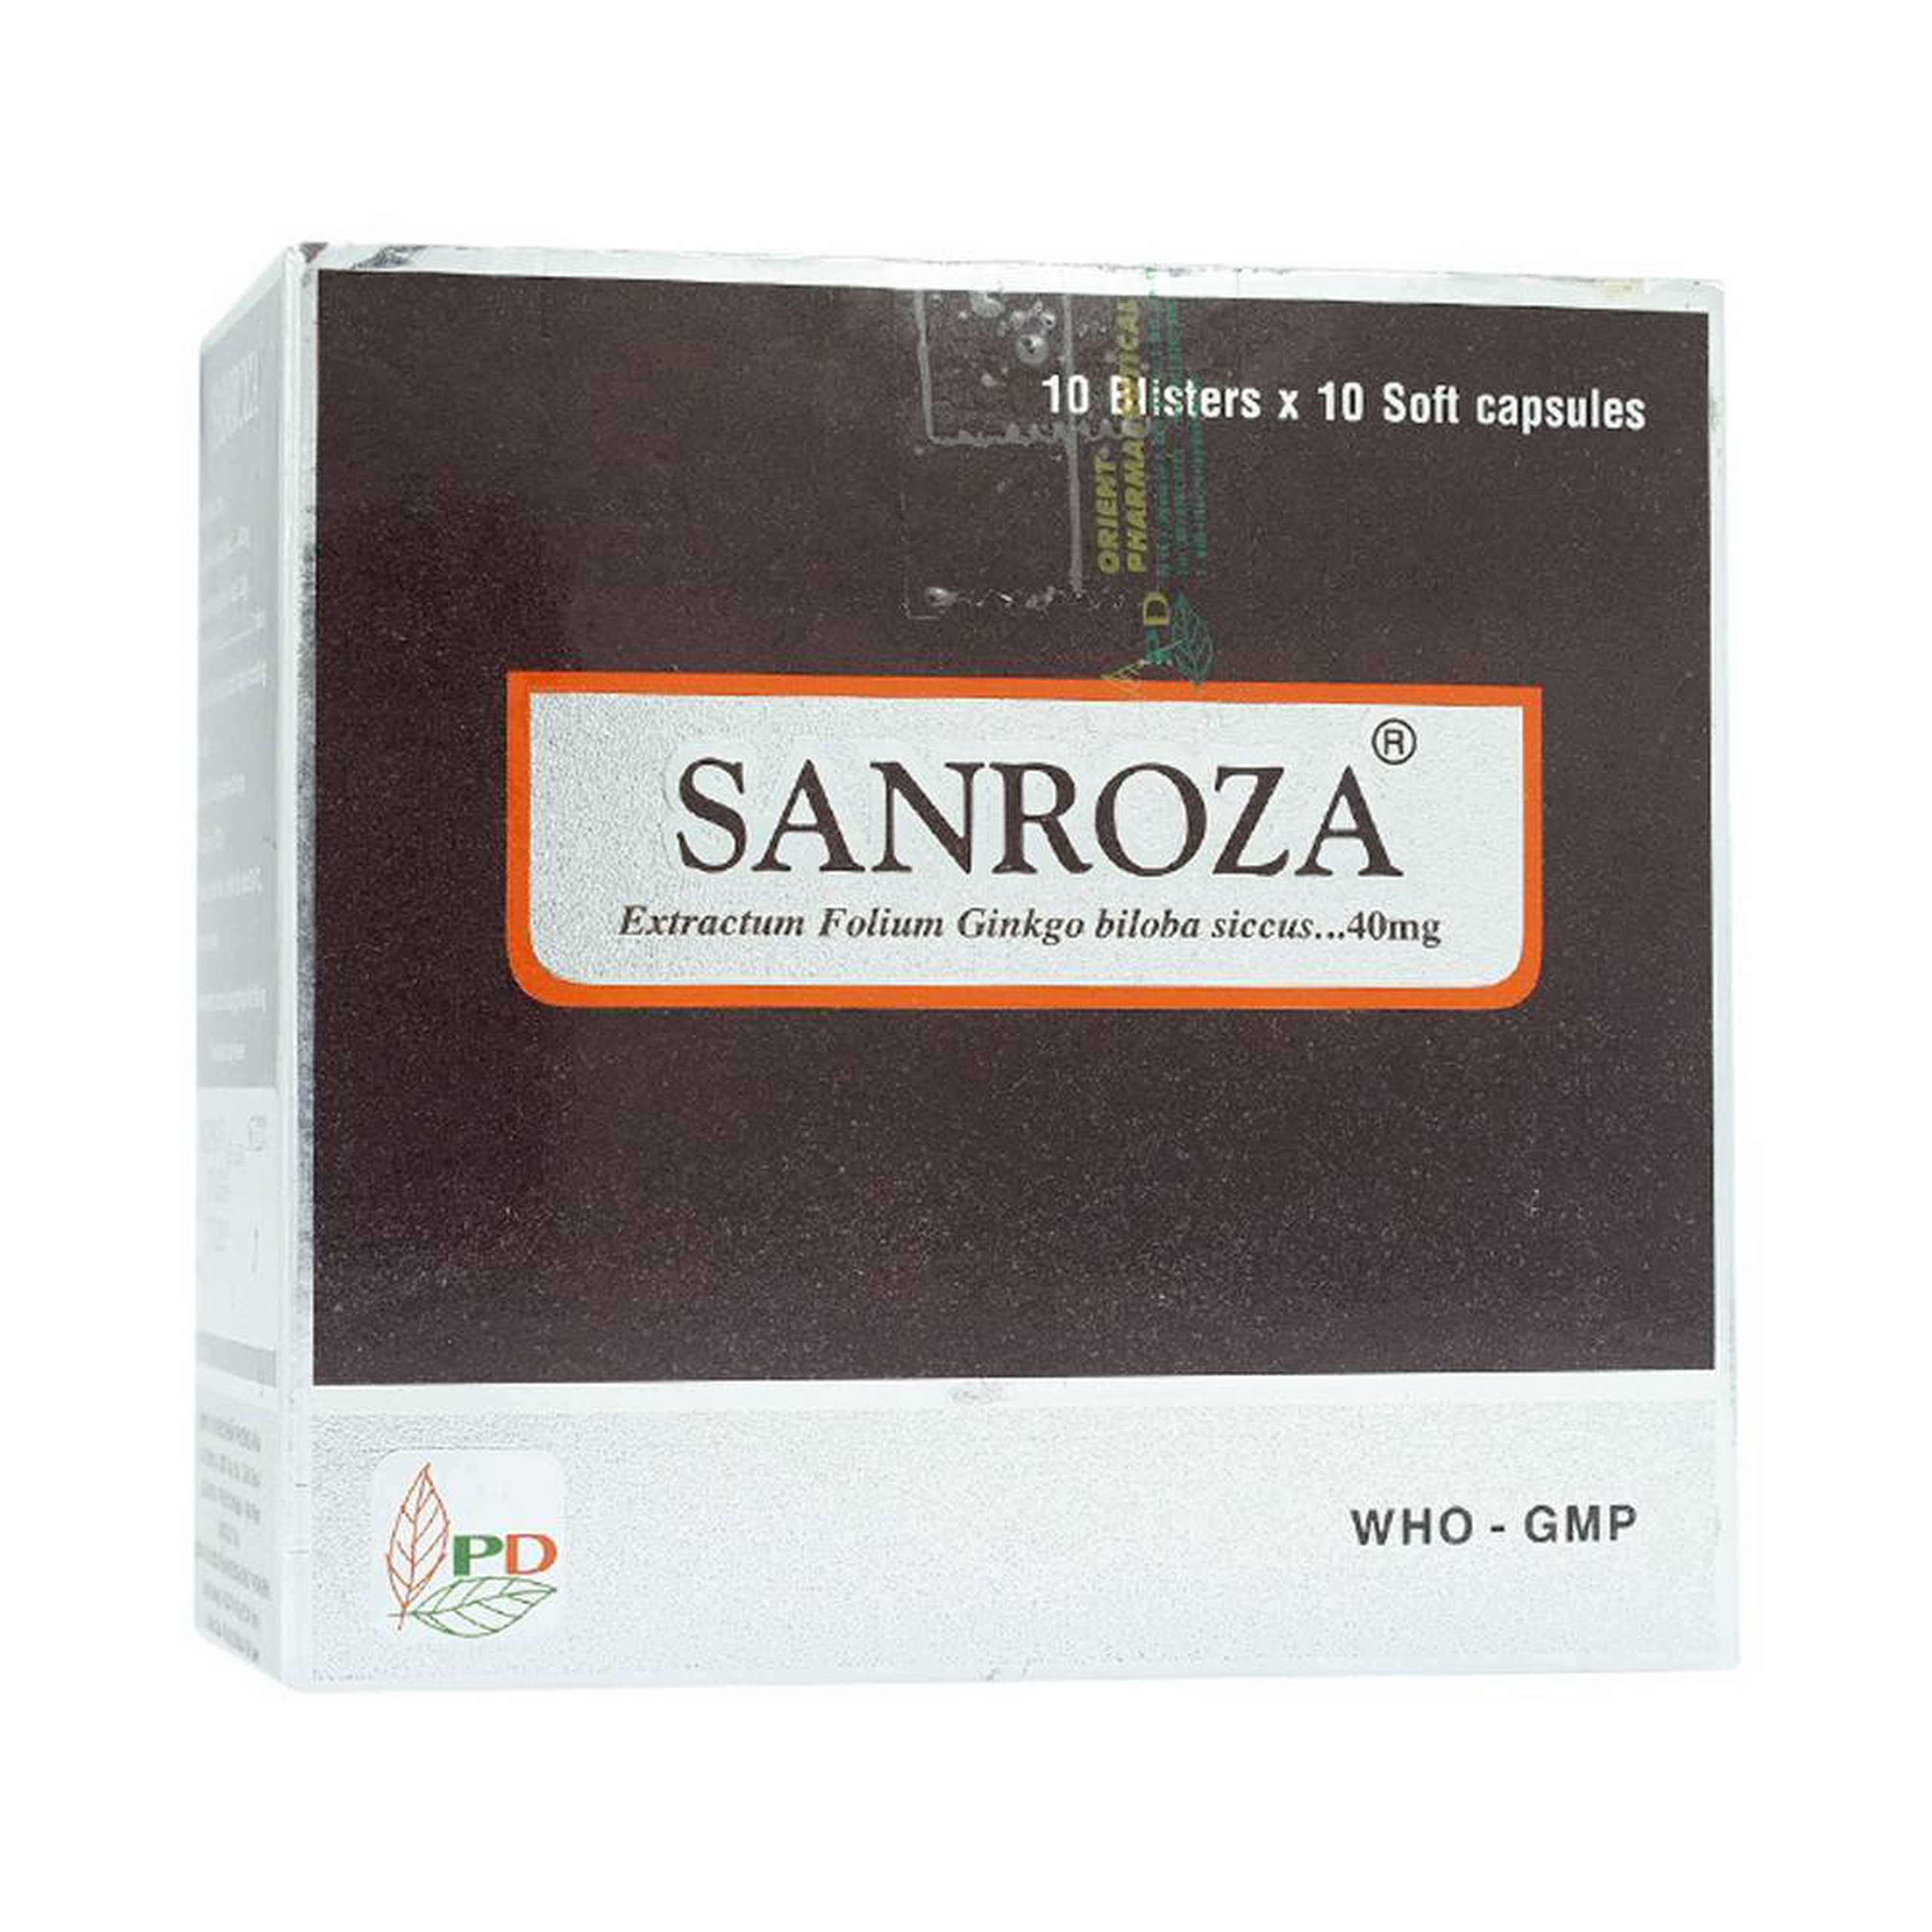 Thuốc Sanroza 40mg Phương Đông điều trị đau cách hồi, bệnh raynaud (10 vỉ x 10 viên)